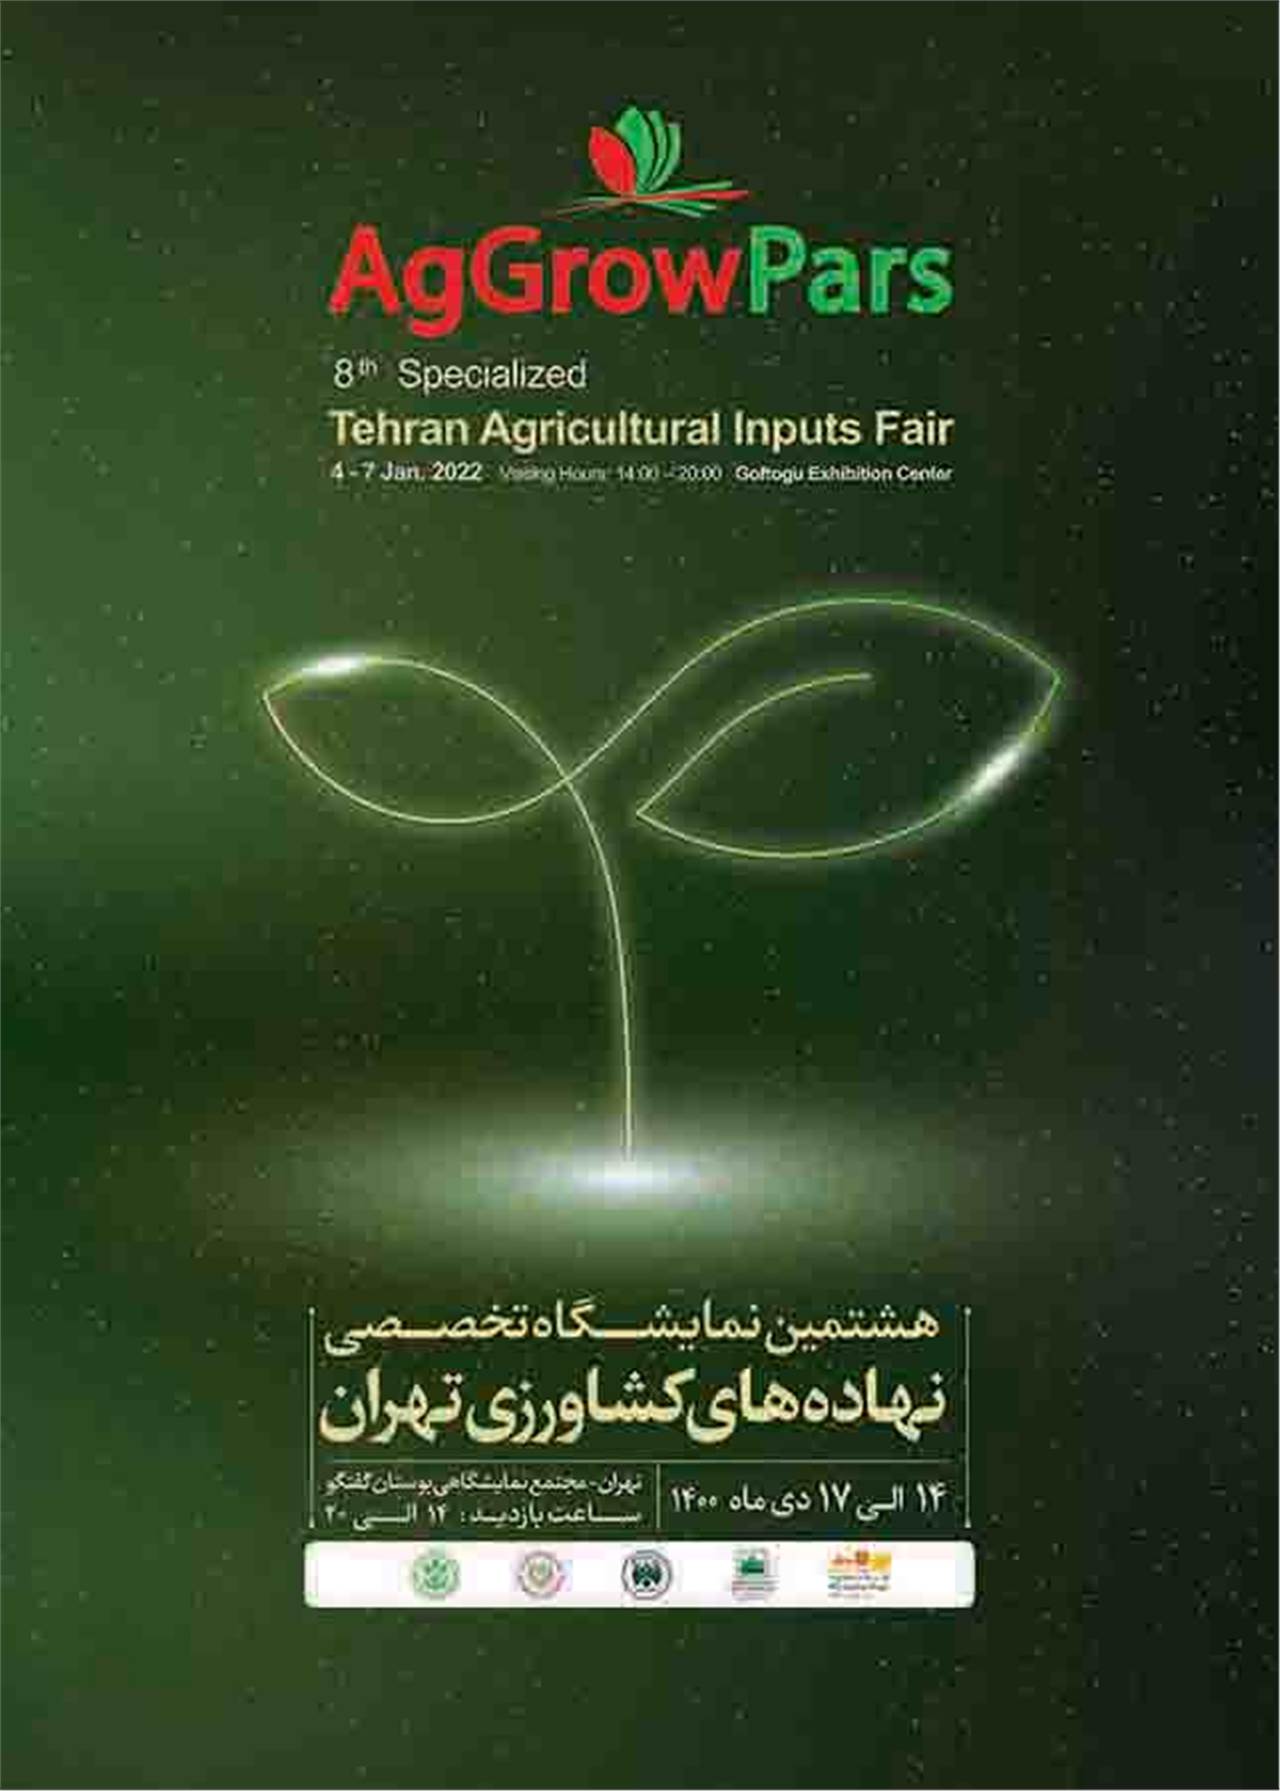 نمایشگاه تخصصی نهاده های کشاورزی تهران 1400